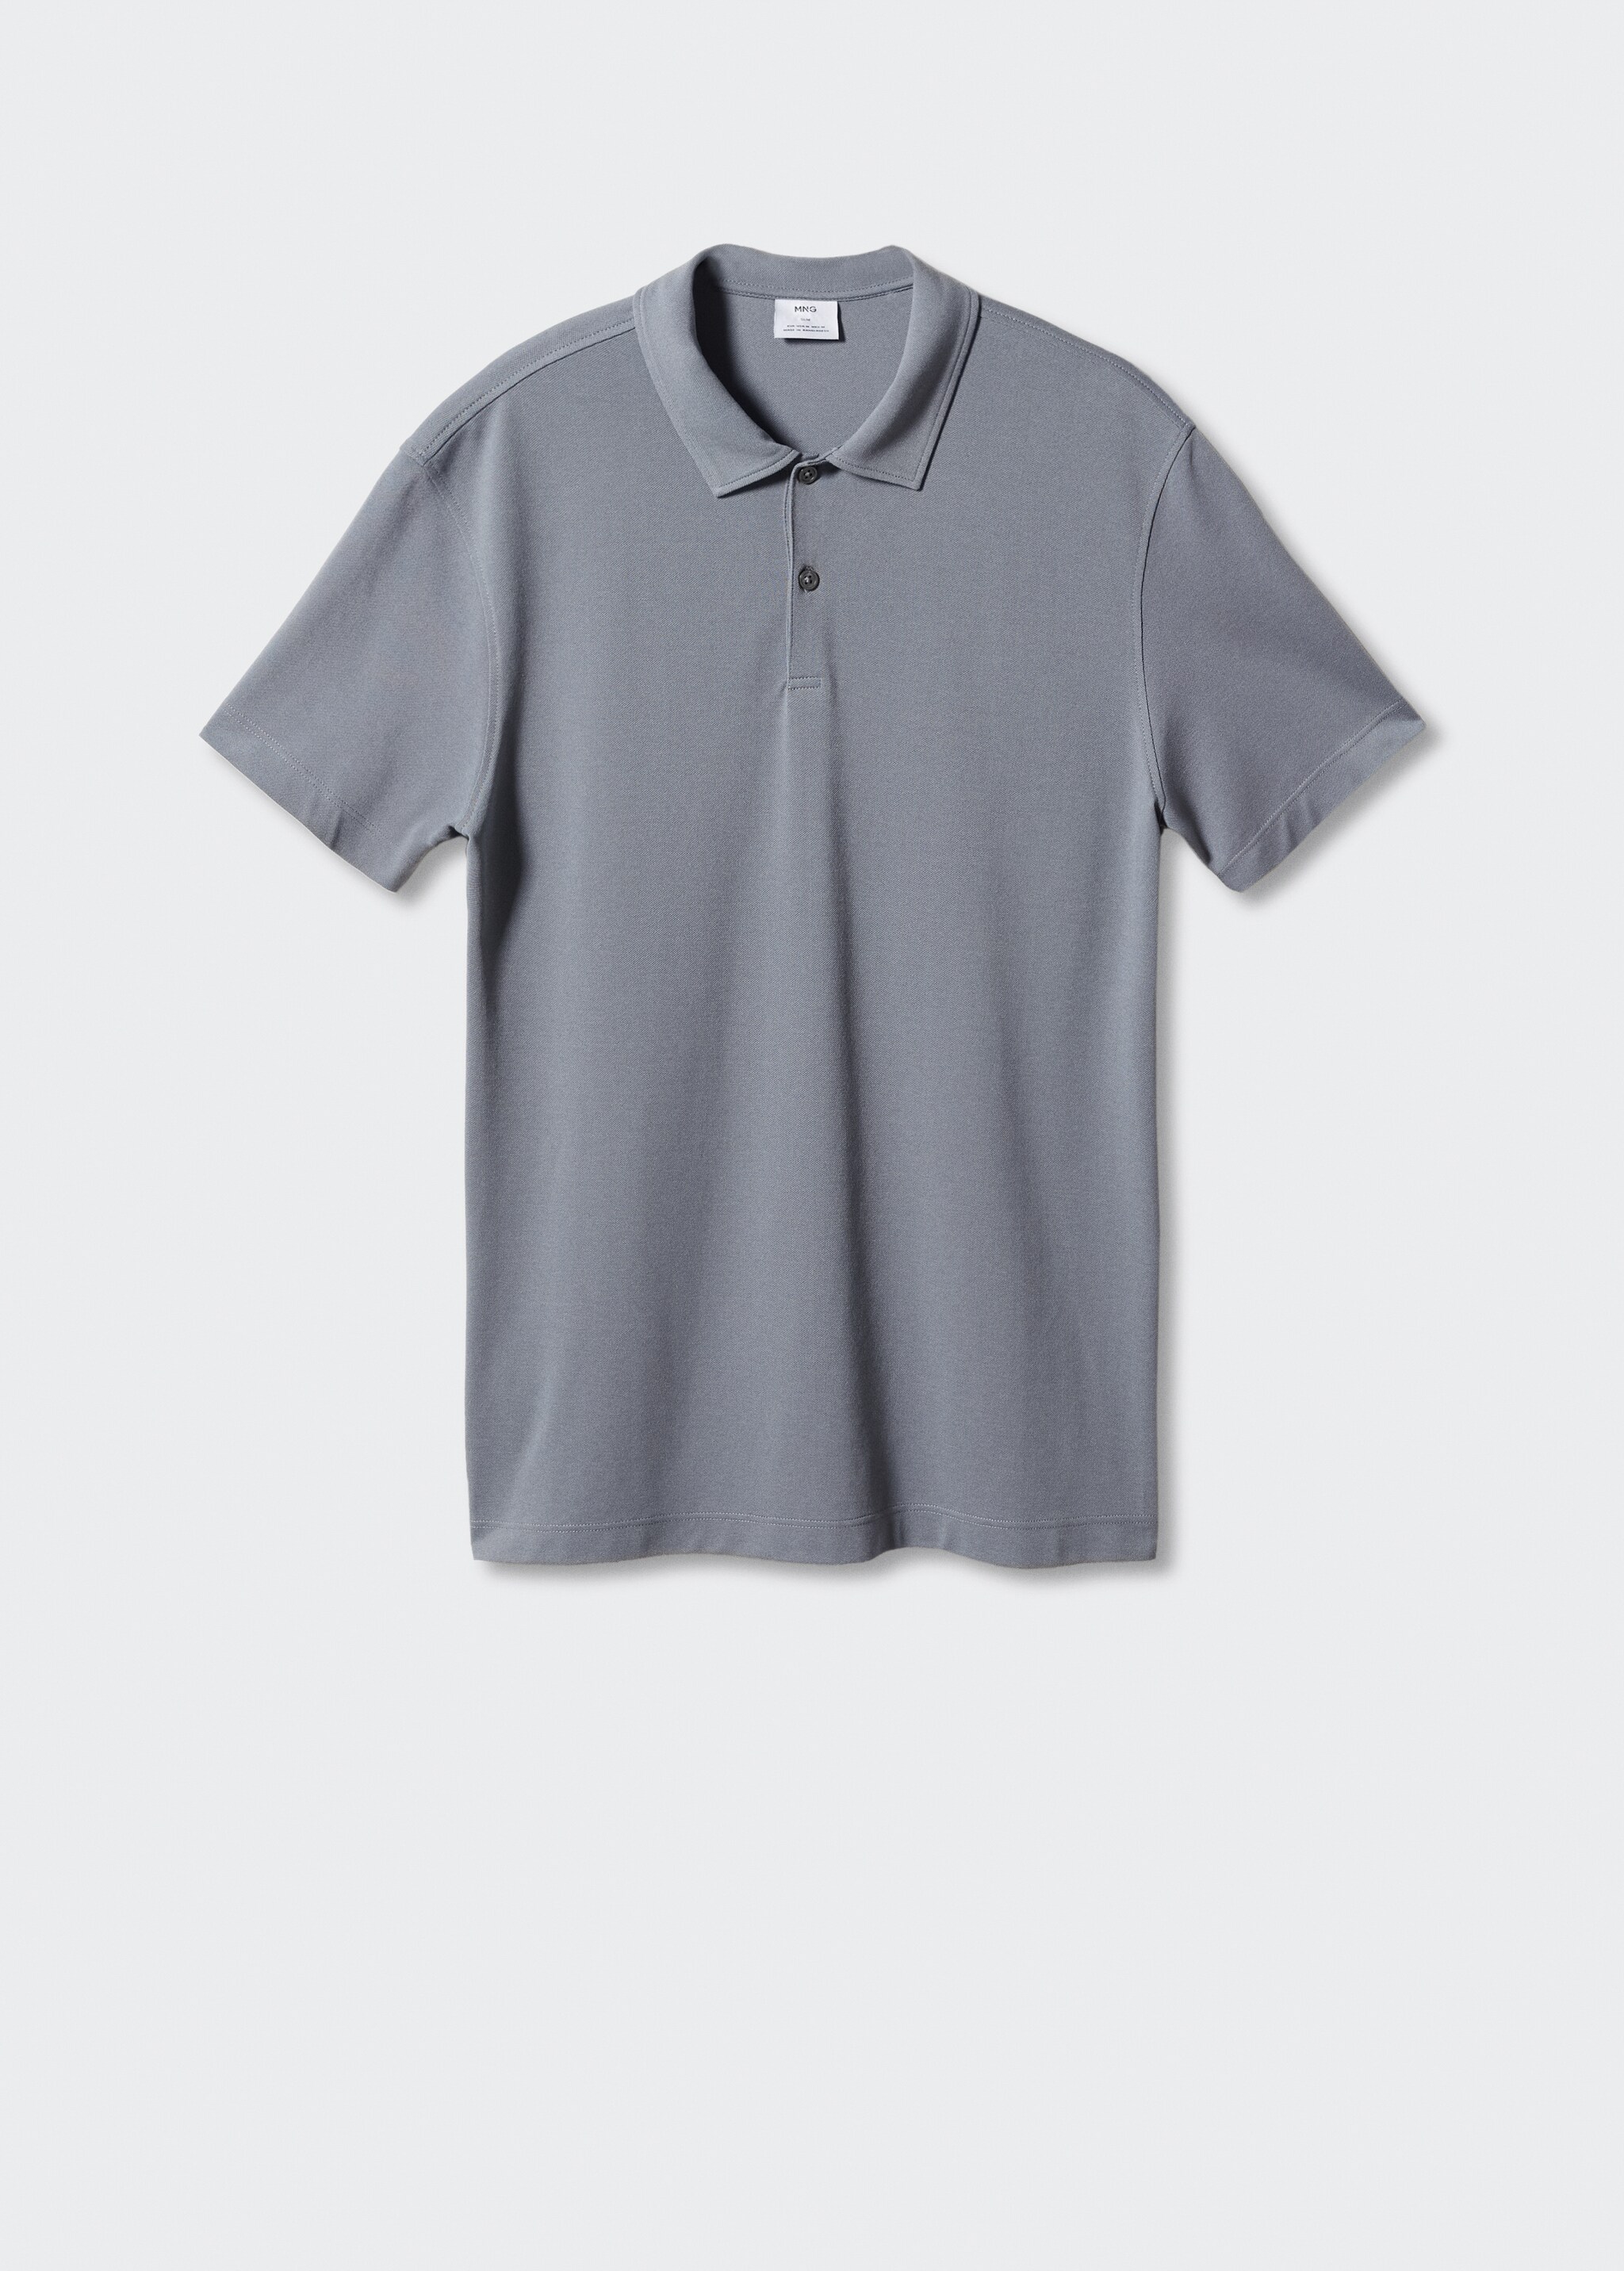 Slim fit cotton piqué texture polo shirt - Article without model